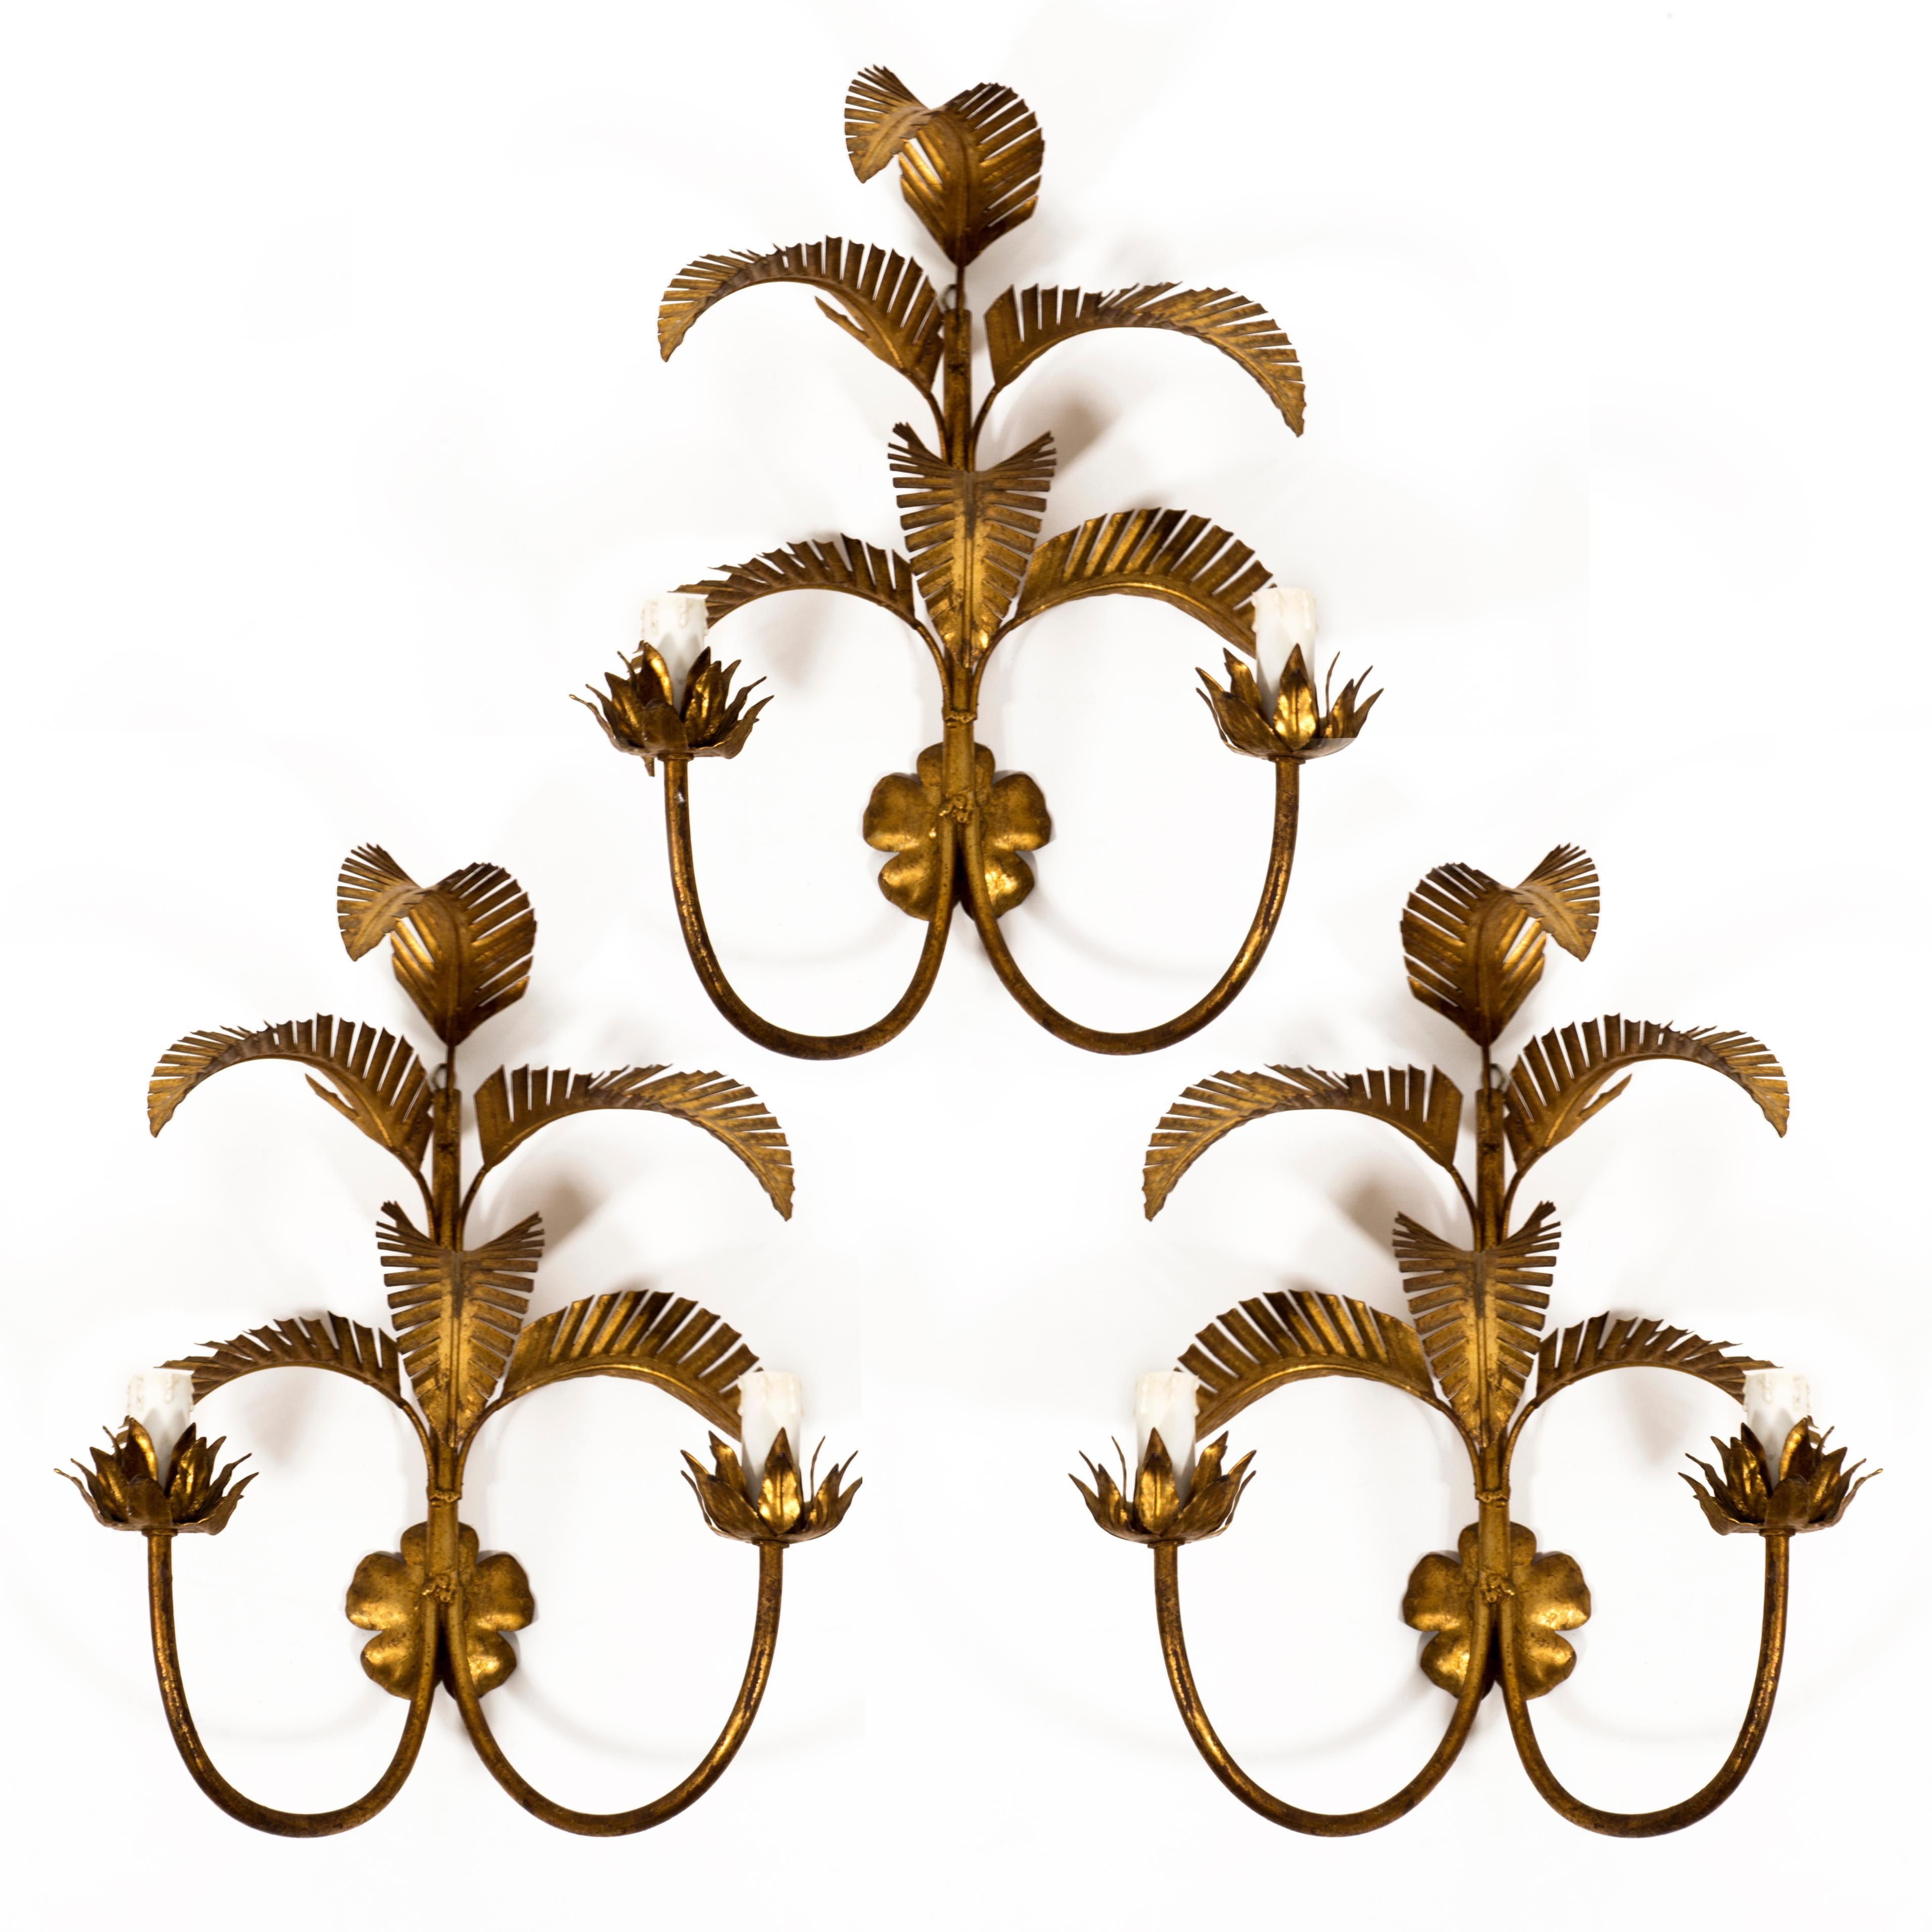 Goregous Satz bestehend aus 3 italienischen vergoldeten Metall Palmenblätter Wandleuchten Sconces rom den 1970er Jahren. Jede Lampe hat zwei Fassungen mit E14-Fassungen.
Diese Lampen sind sowohl Beleuchtung als auch Skulptur. Geeignet für alle